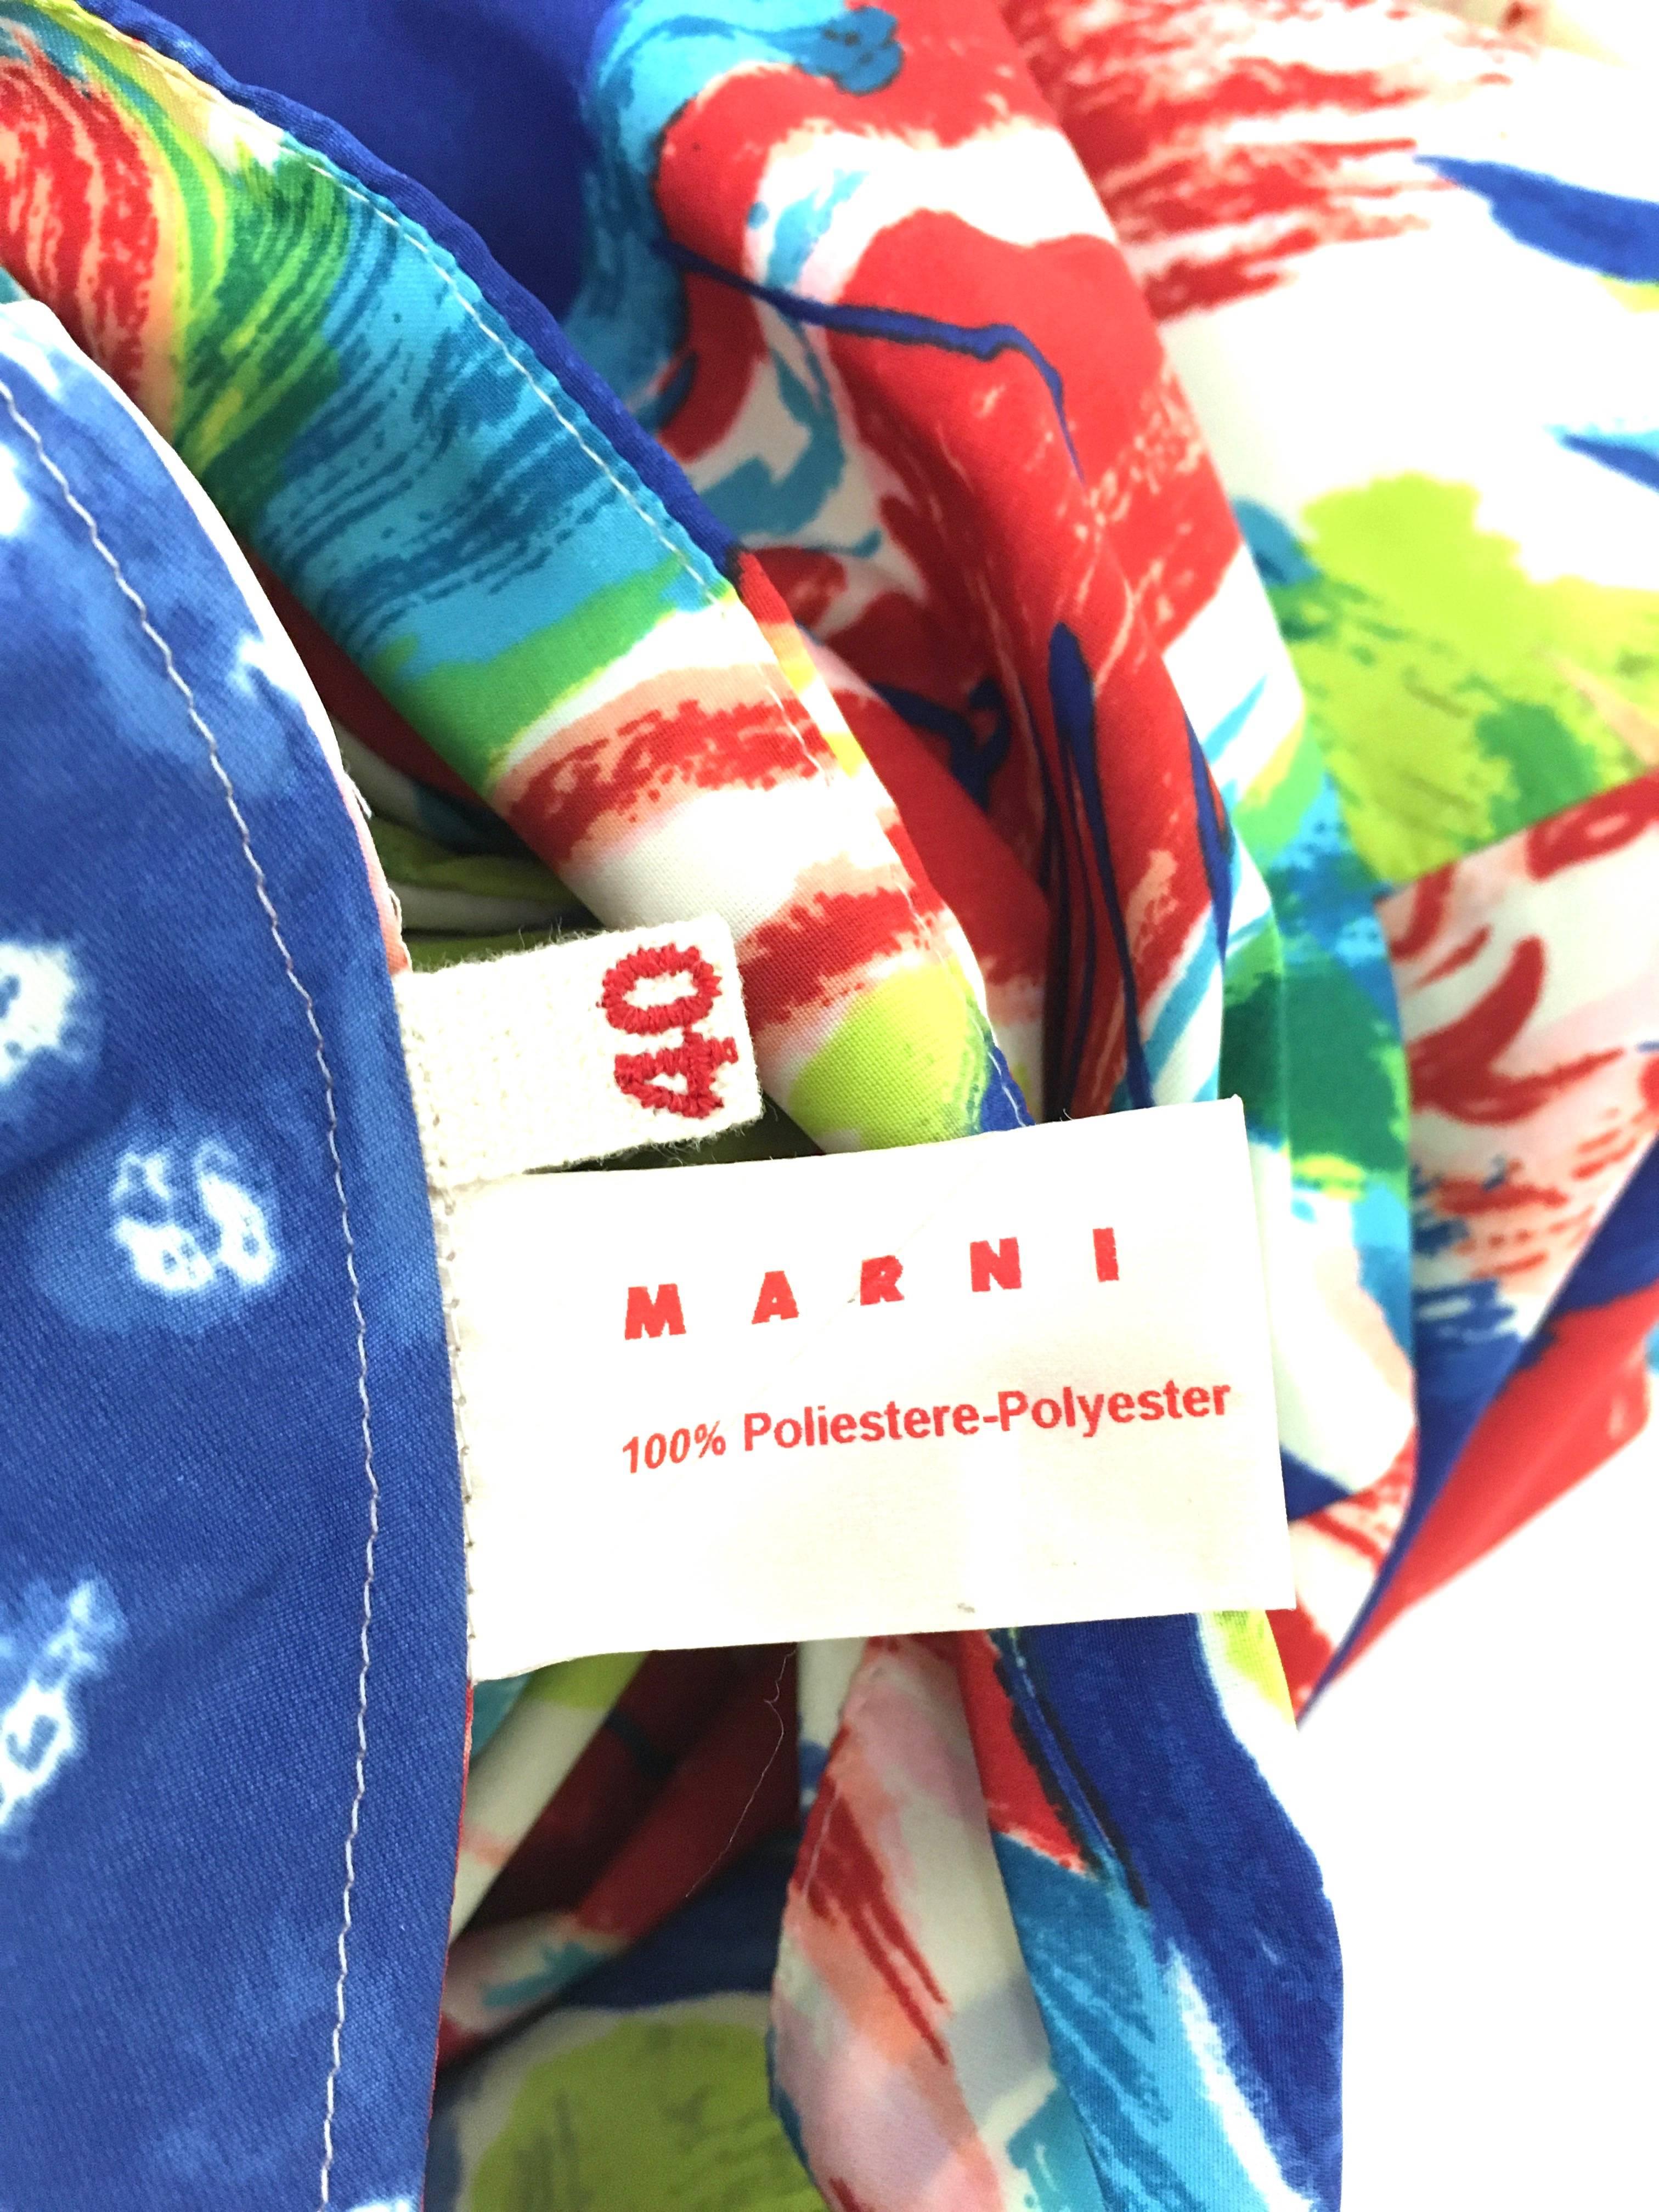 Marni Abstarct Print Multi Color Blosue 40 For Sale 2